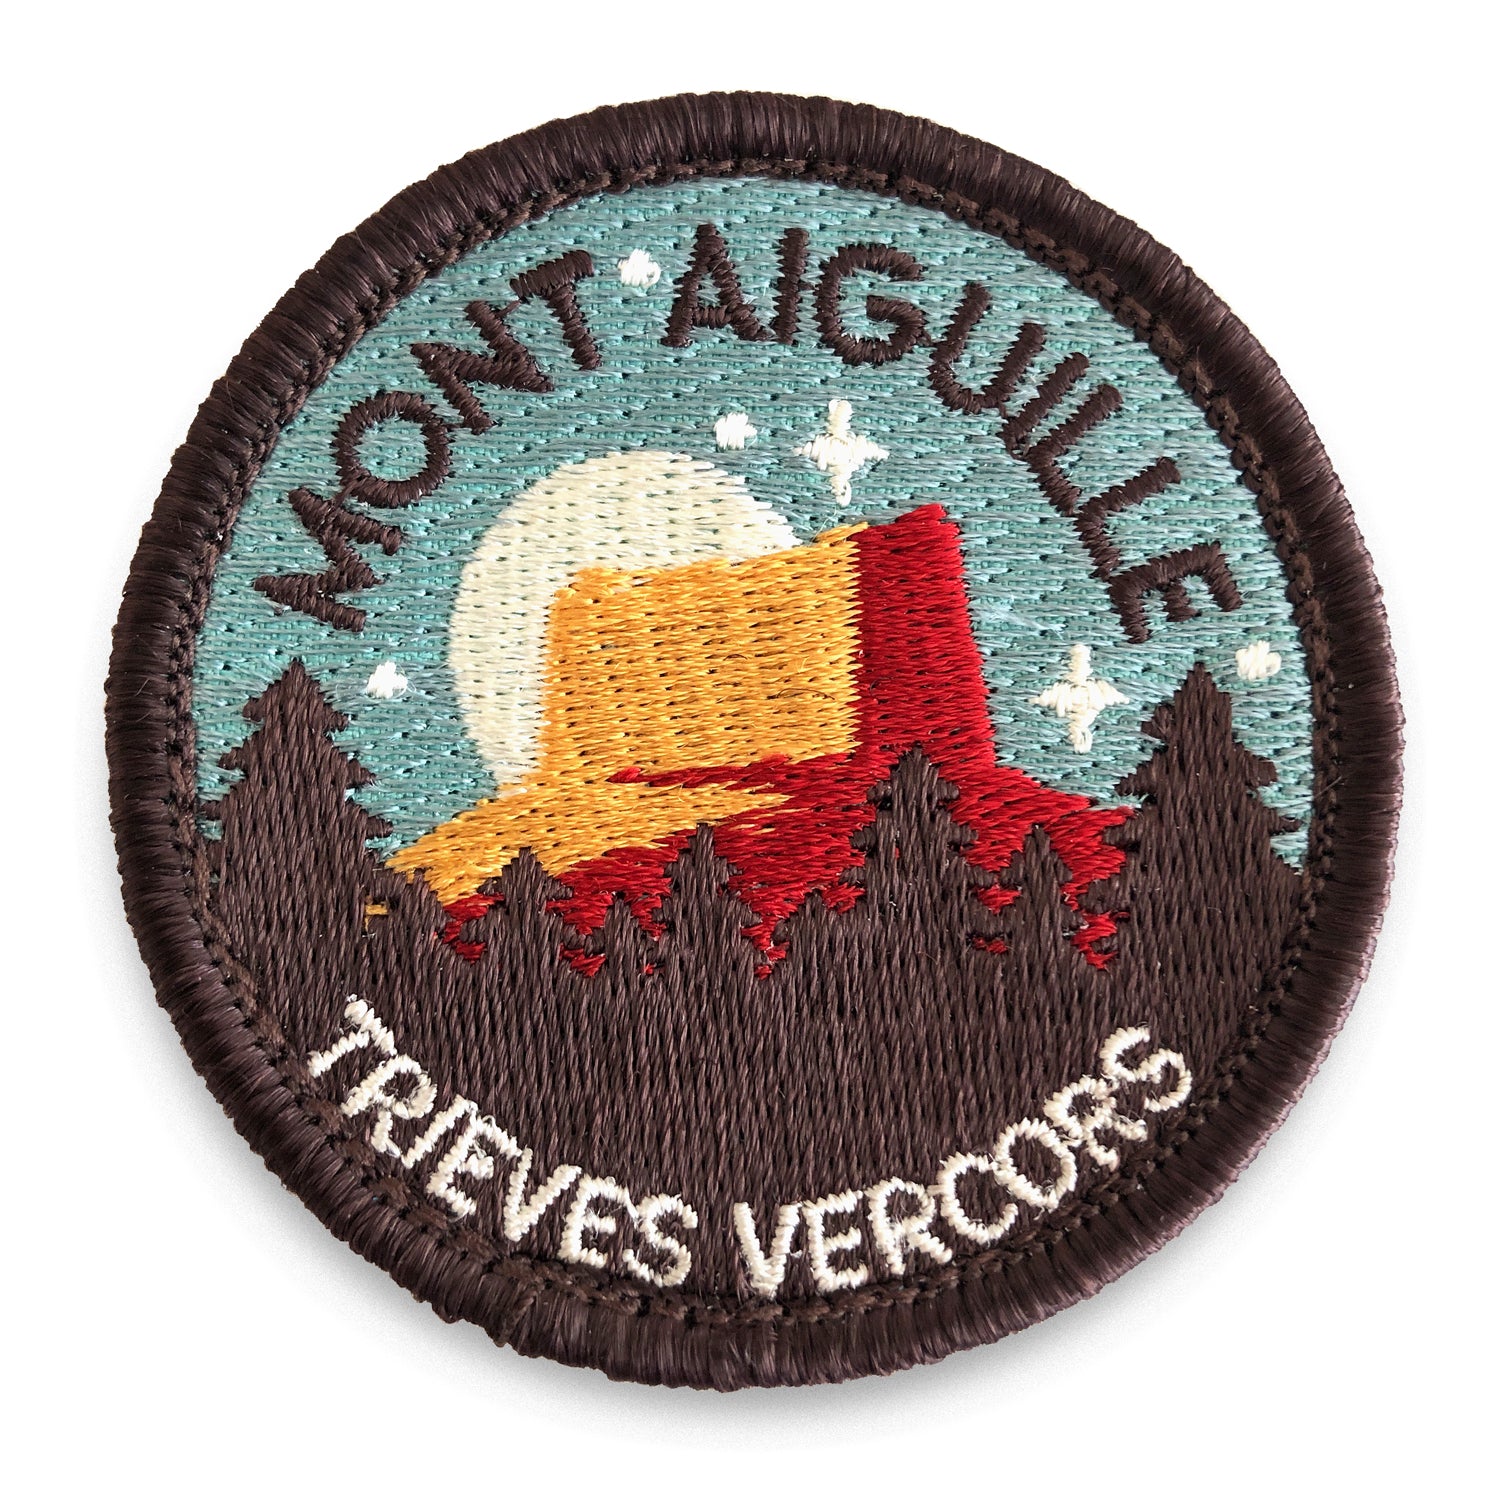 MARQUE MONT AIGUILLE® : Ecusson Brodé du Mont Aiguille Brodé à coudre, Cadeau Souvenir du Trièves Vercors.